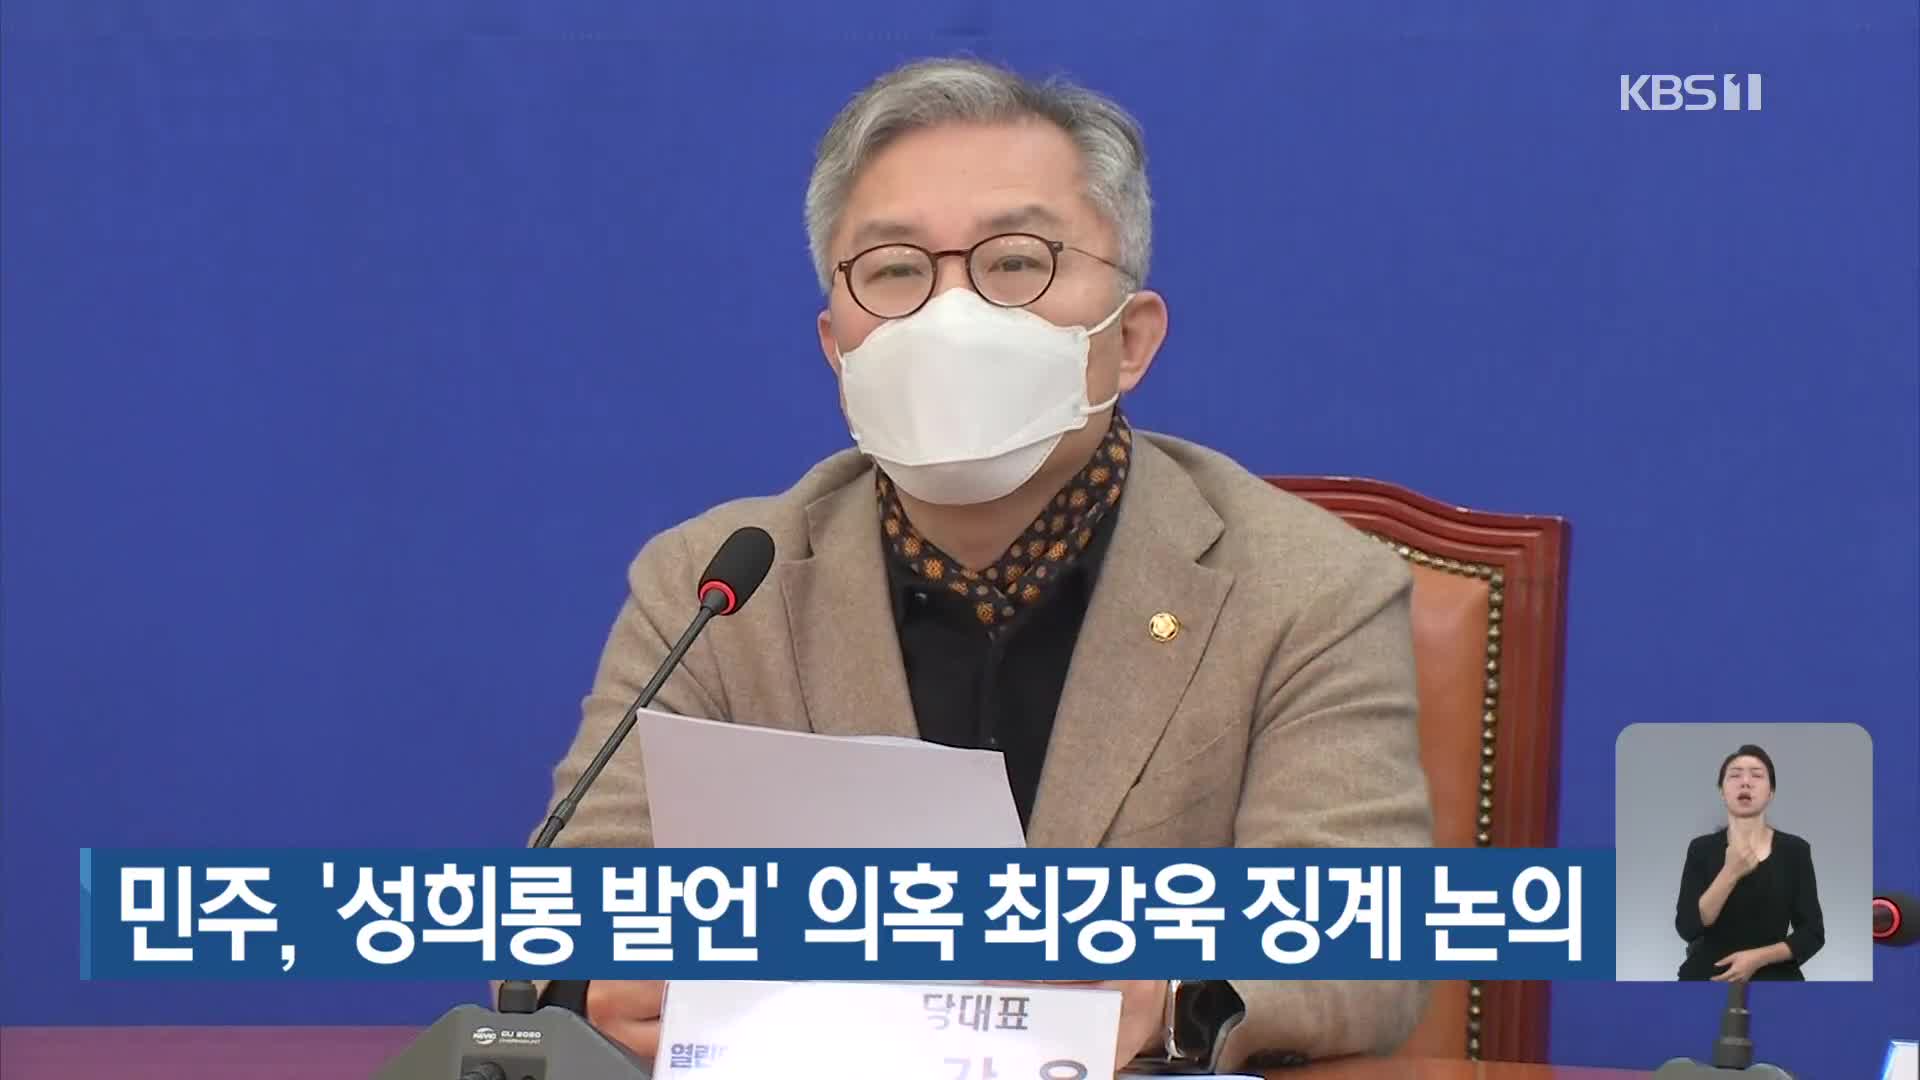 민주, ‘성희롱 발언’ 의혹 최강욱 징계 논의